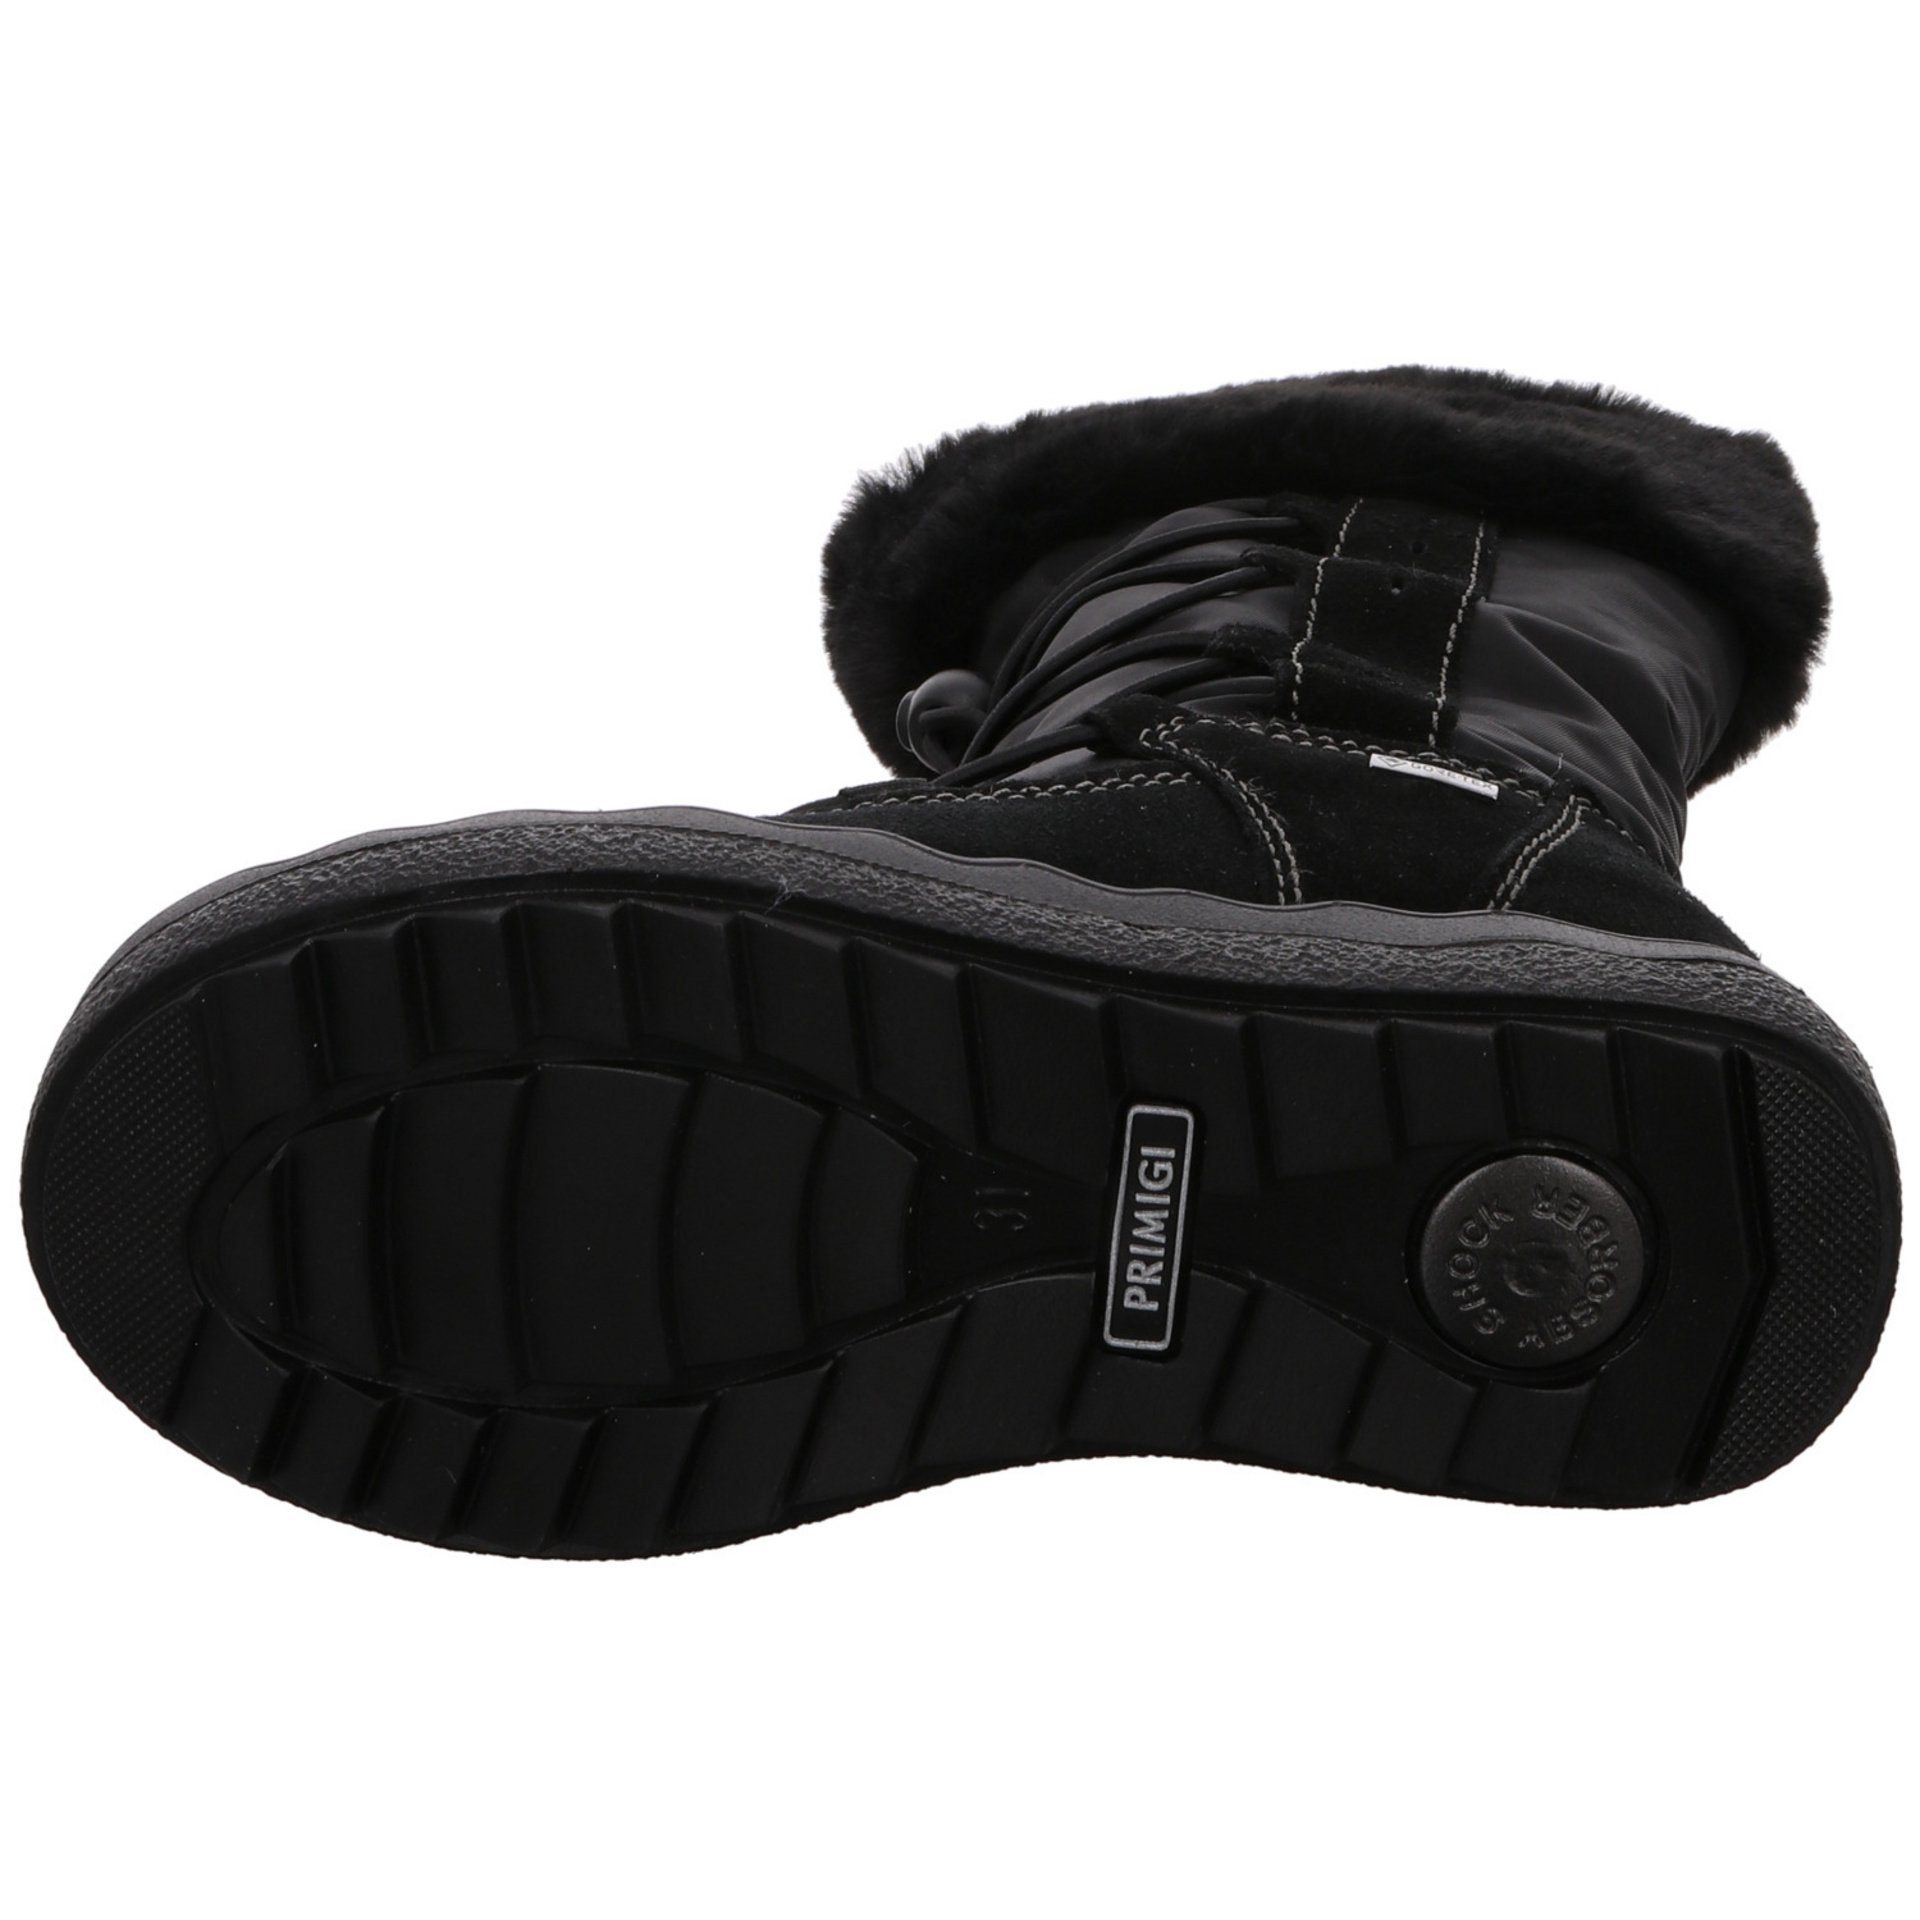 Kinderschuhe NERO/NERO/NERO Schuhe Mädchen Stiefel Primigi Leder-/Textilkombination Stiefel Stiefelette